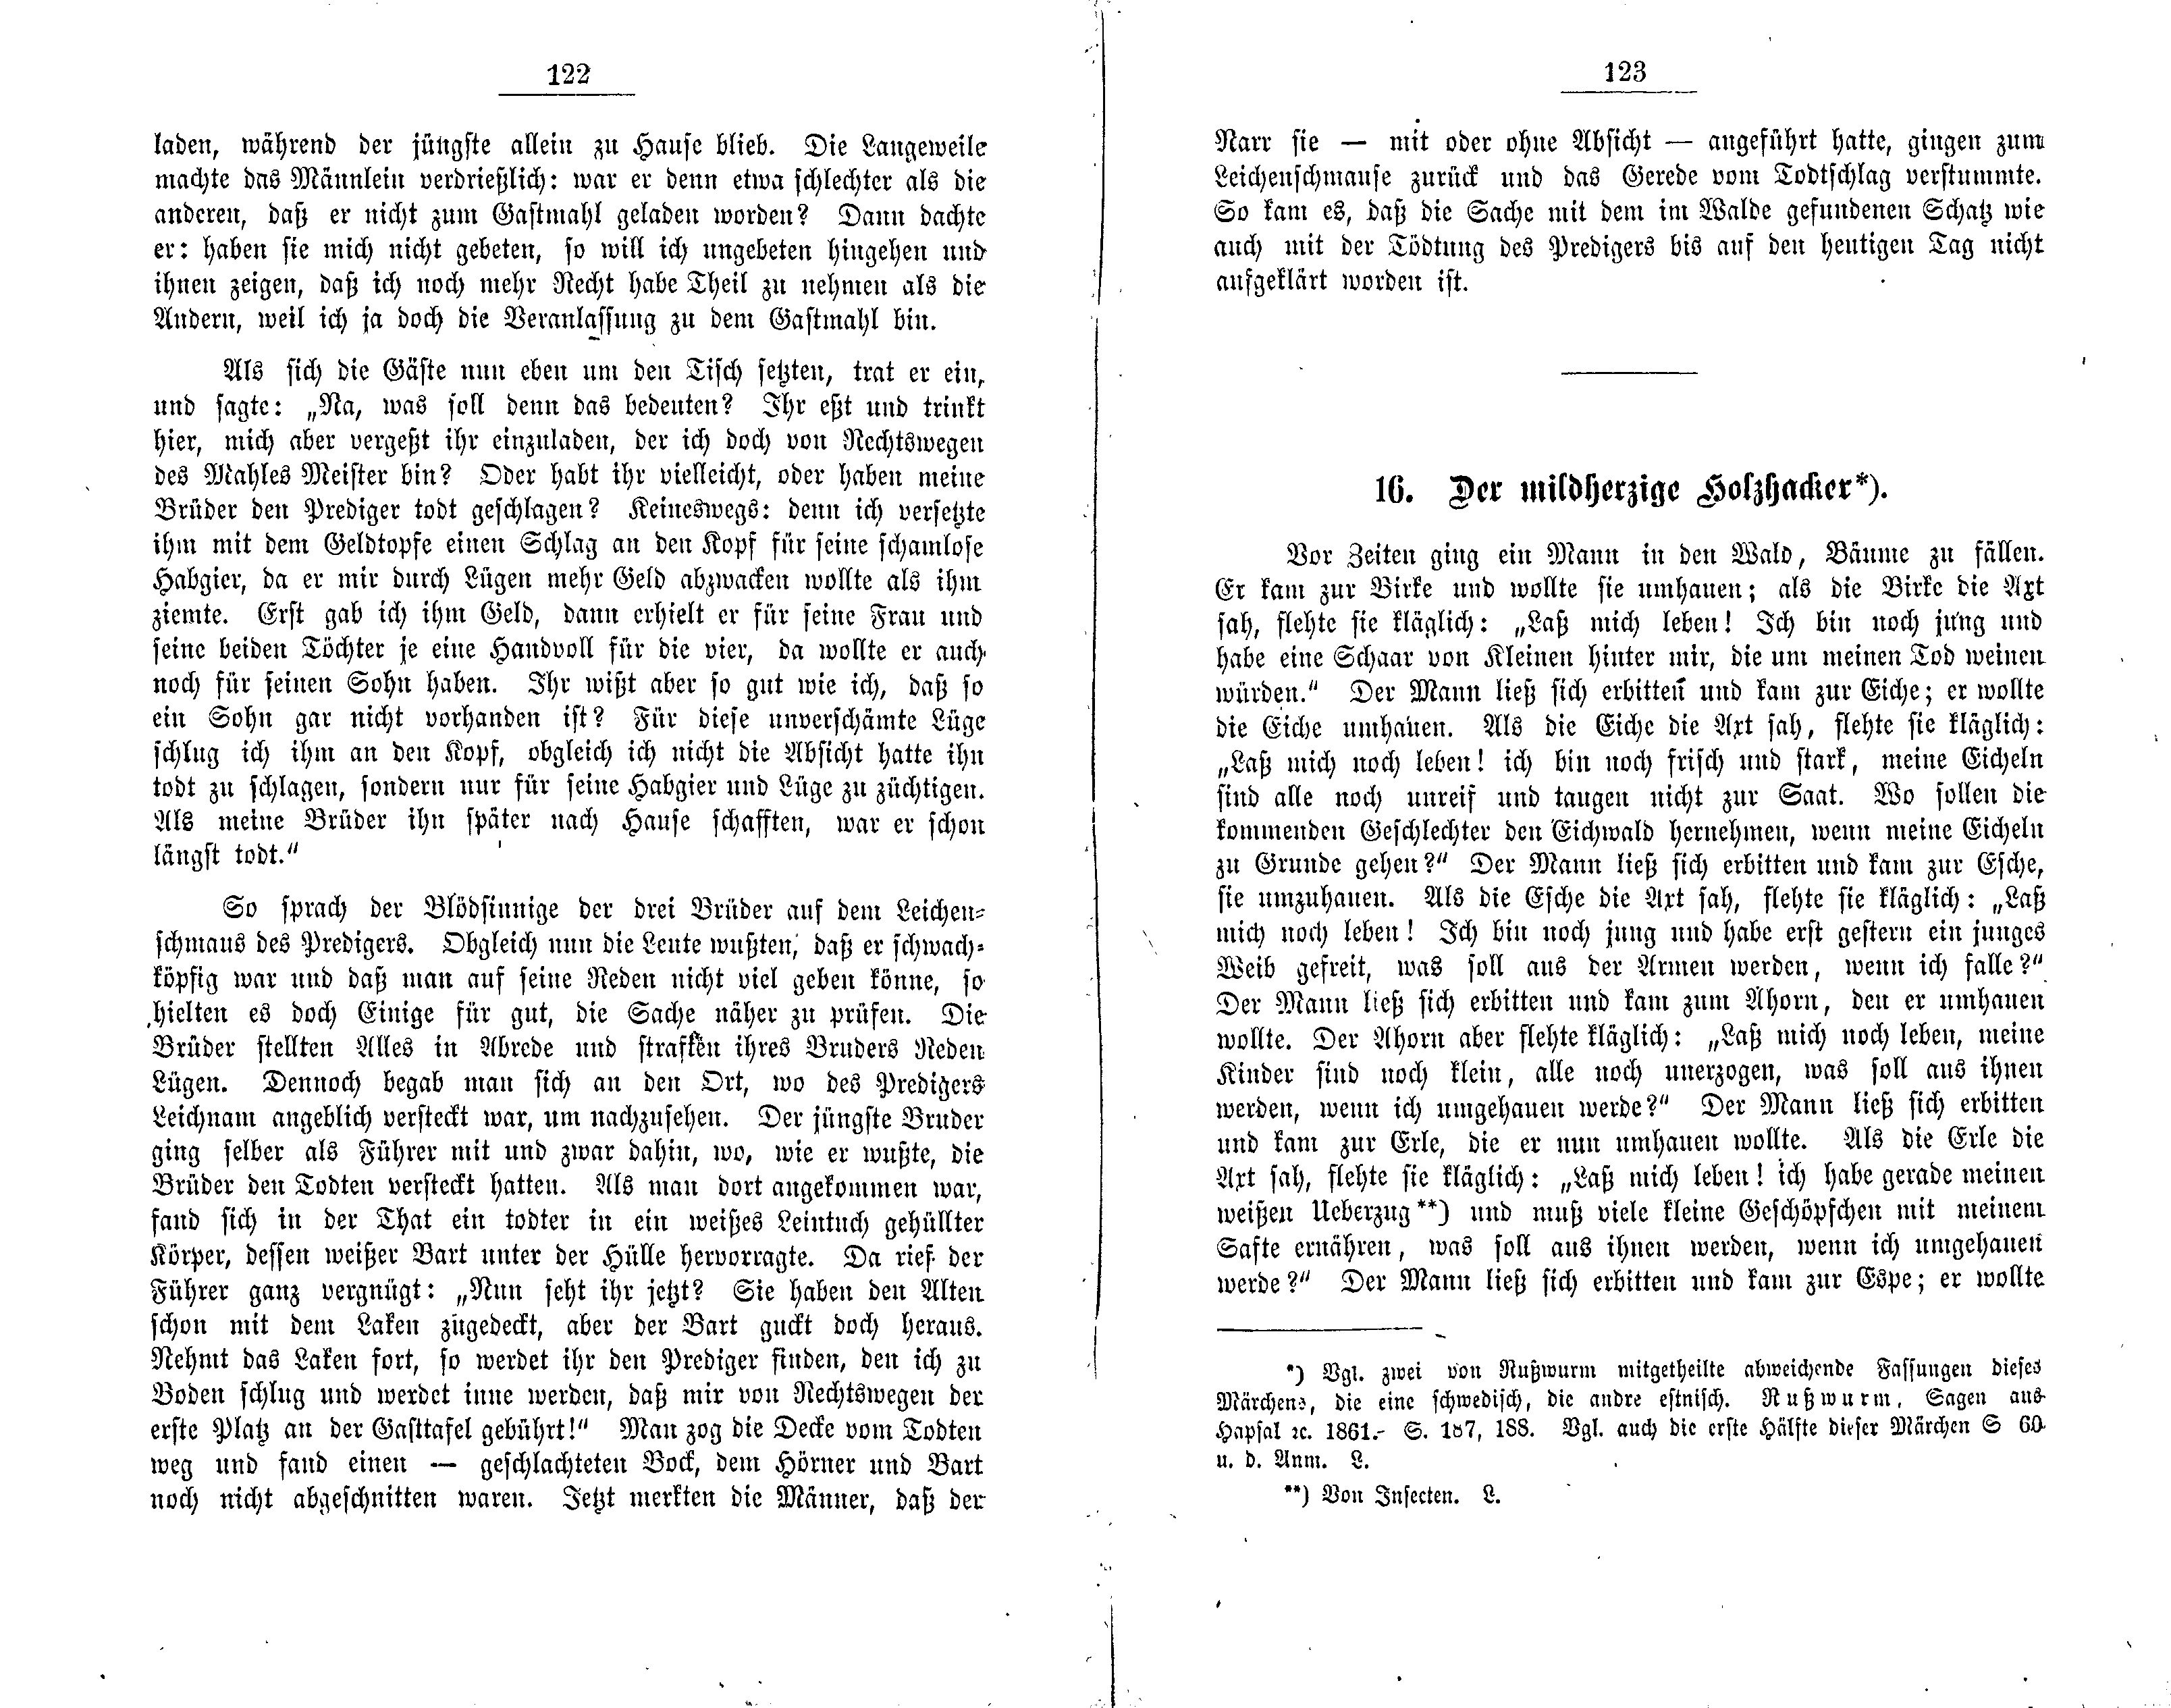 Der mildherzige Holzhacker (1881) | 1. (122-123) Main body of text